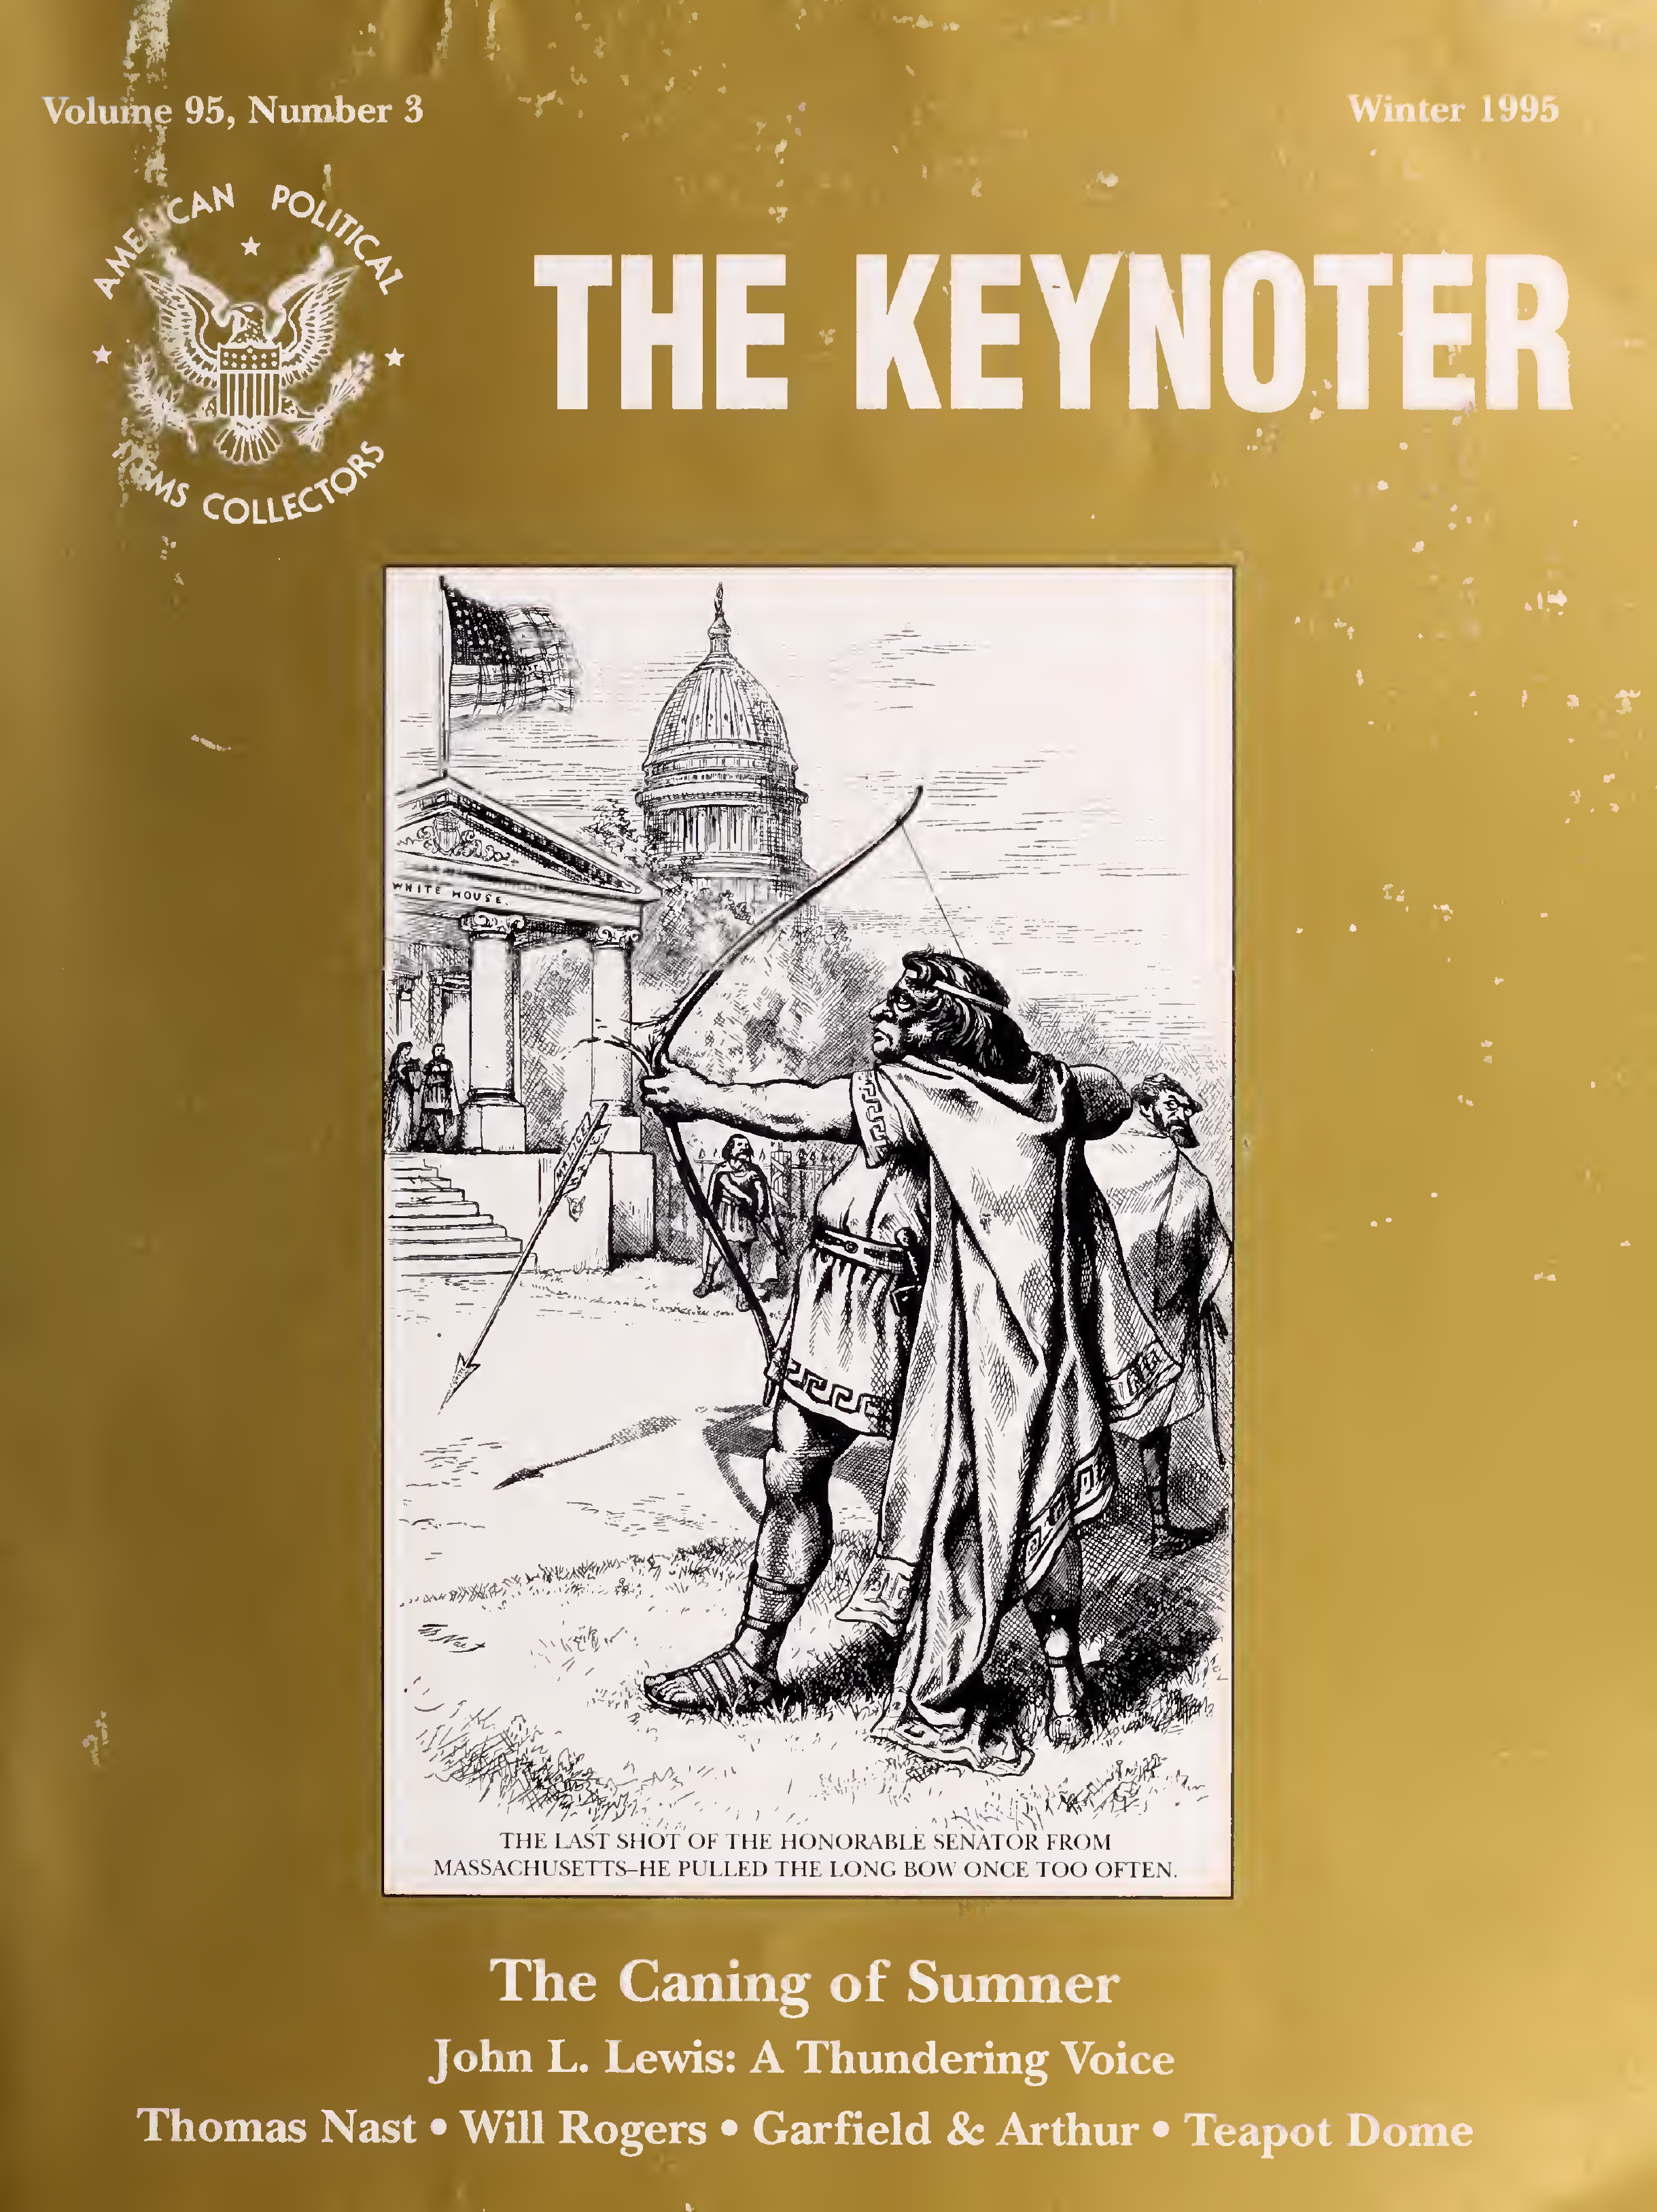 Keynoter 1995 - Winter - Issue 3